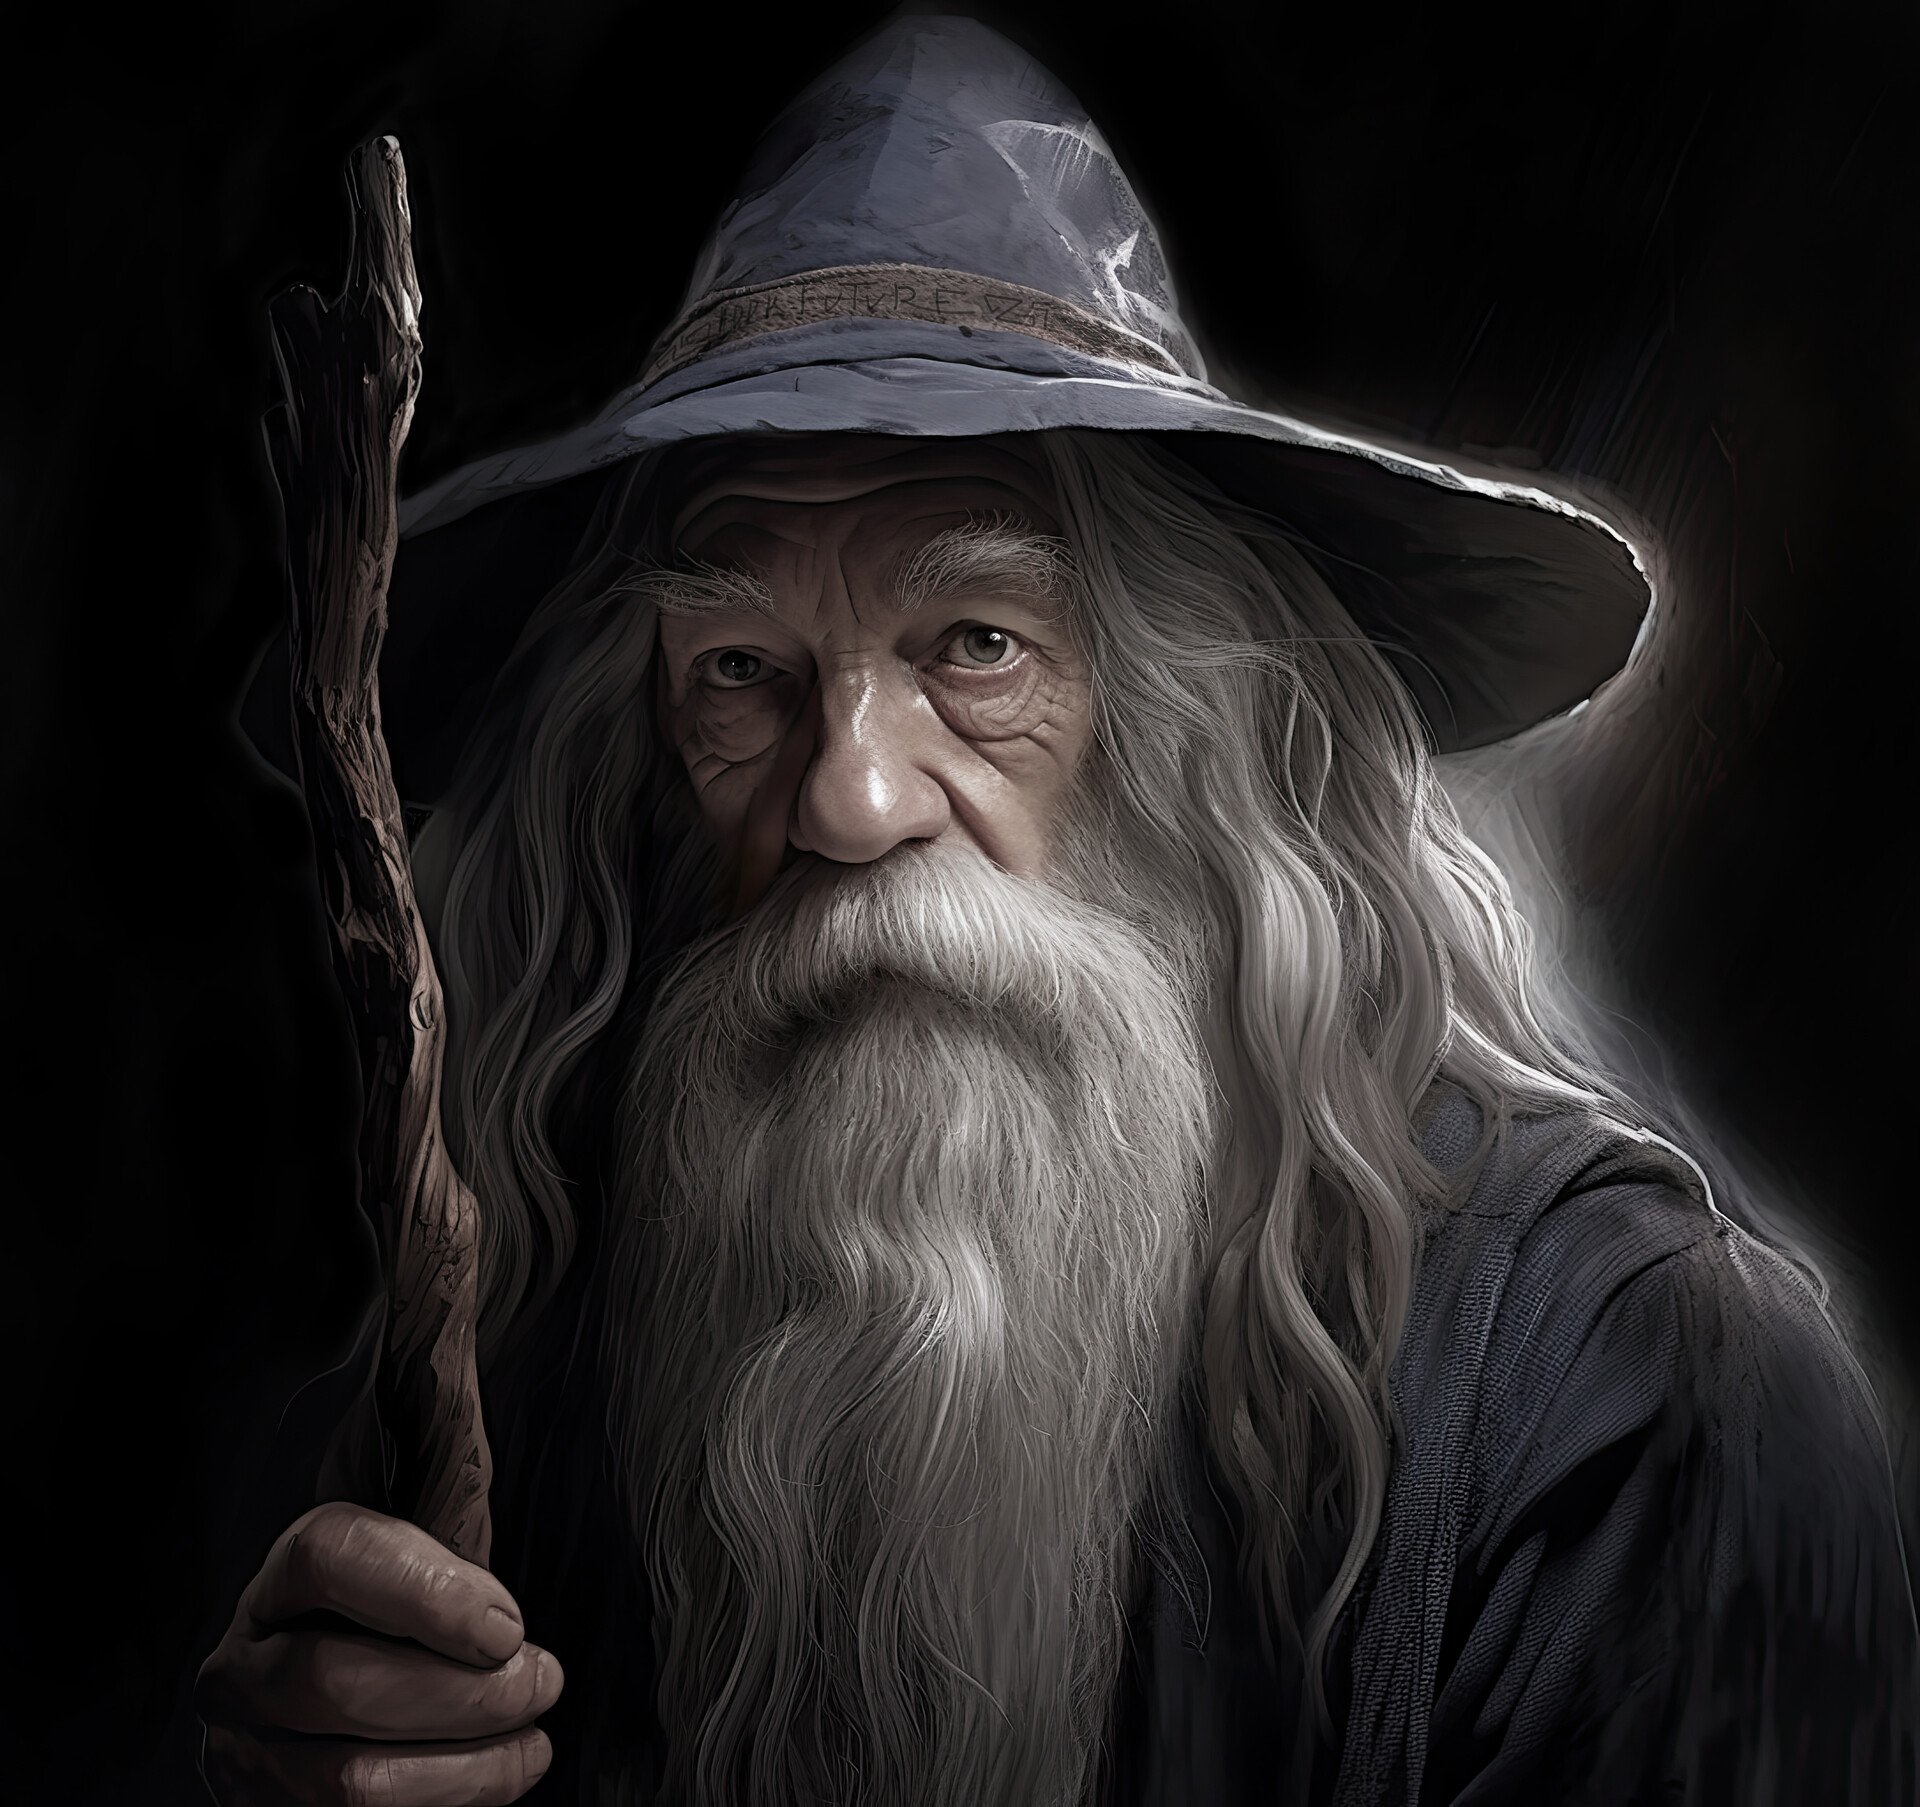 ArtStation - Gandalf the Gray Hobbit